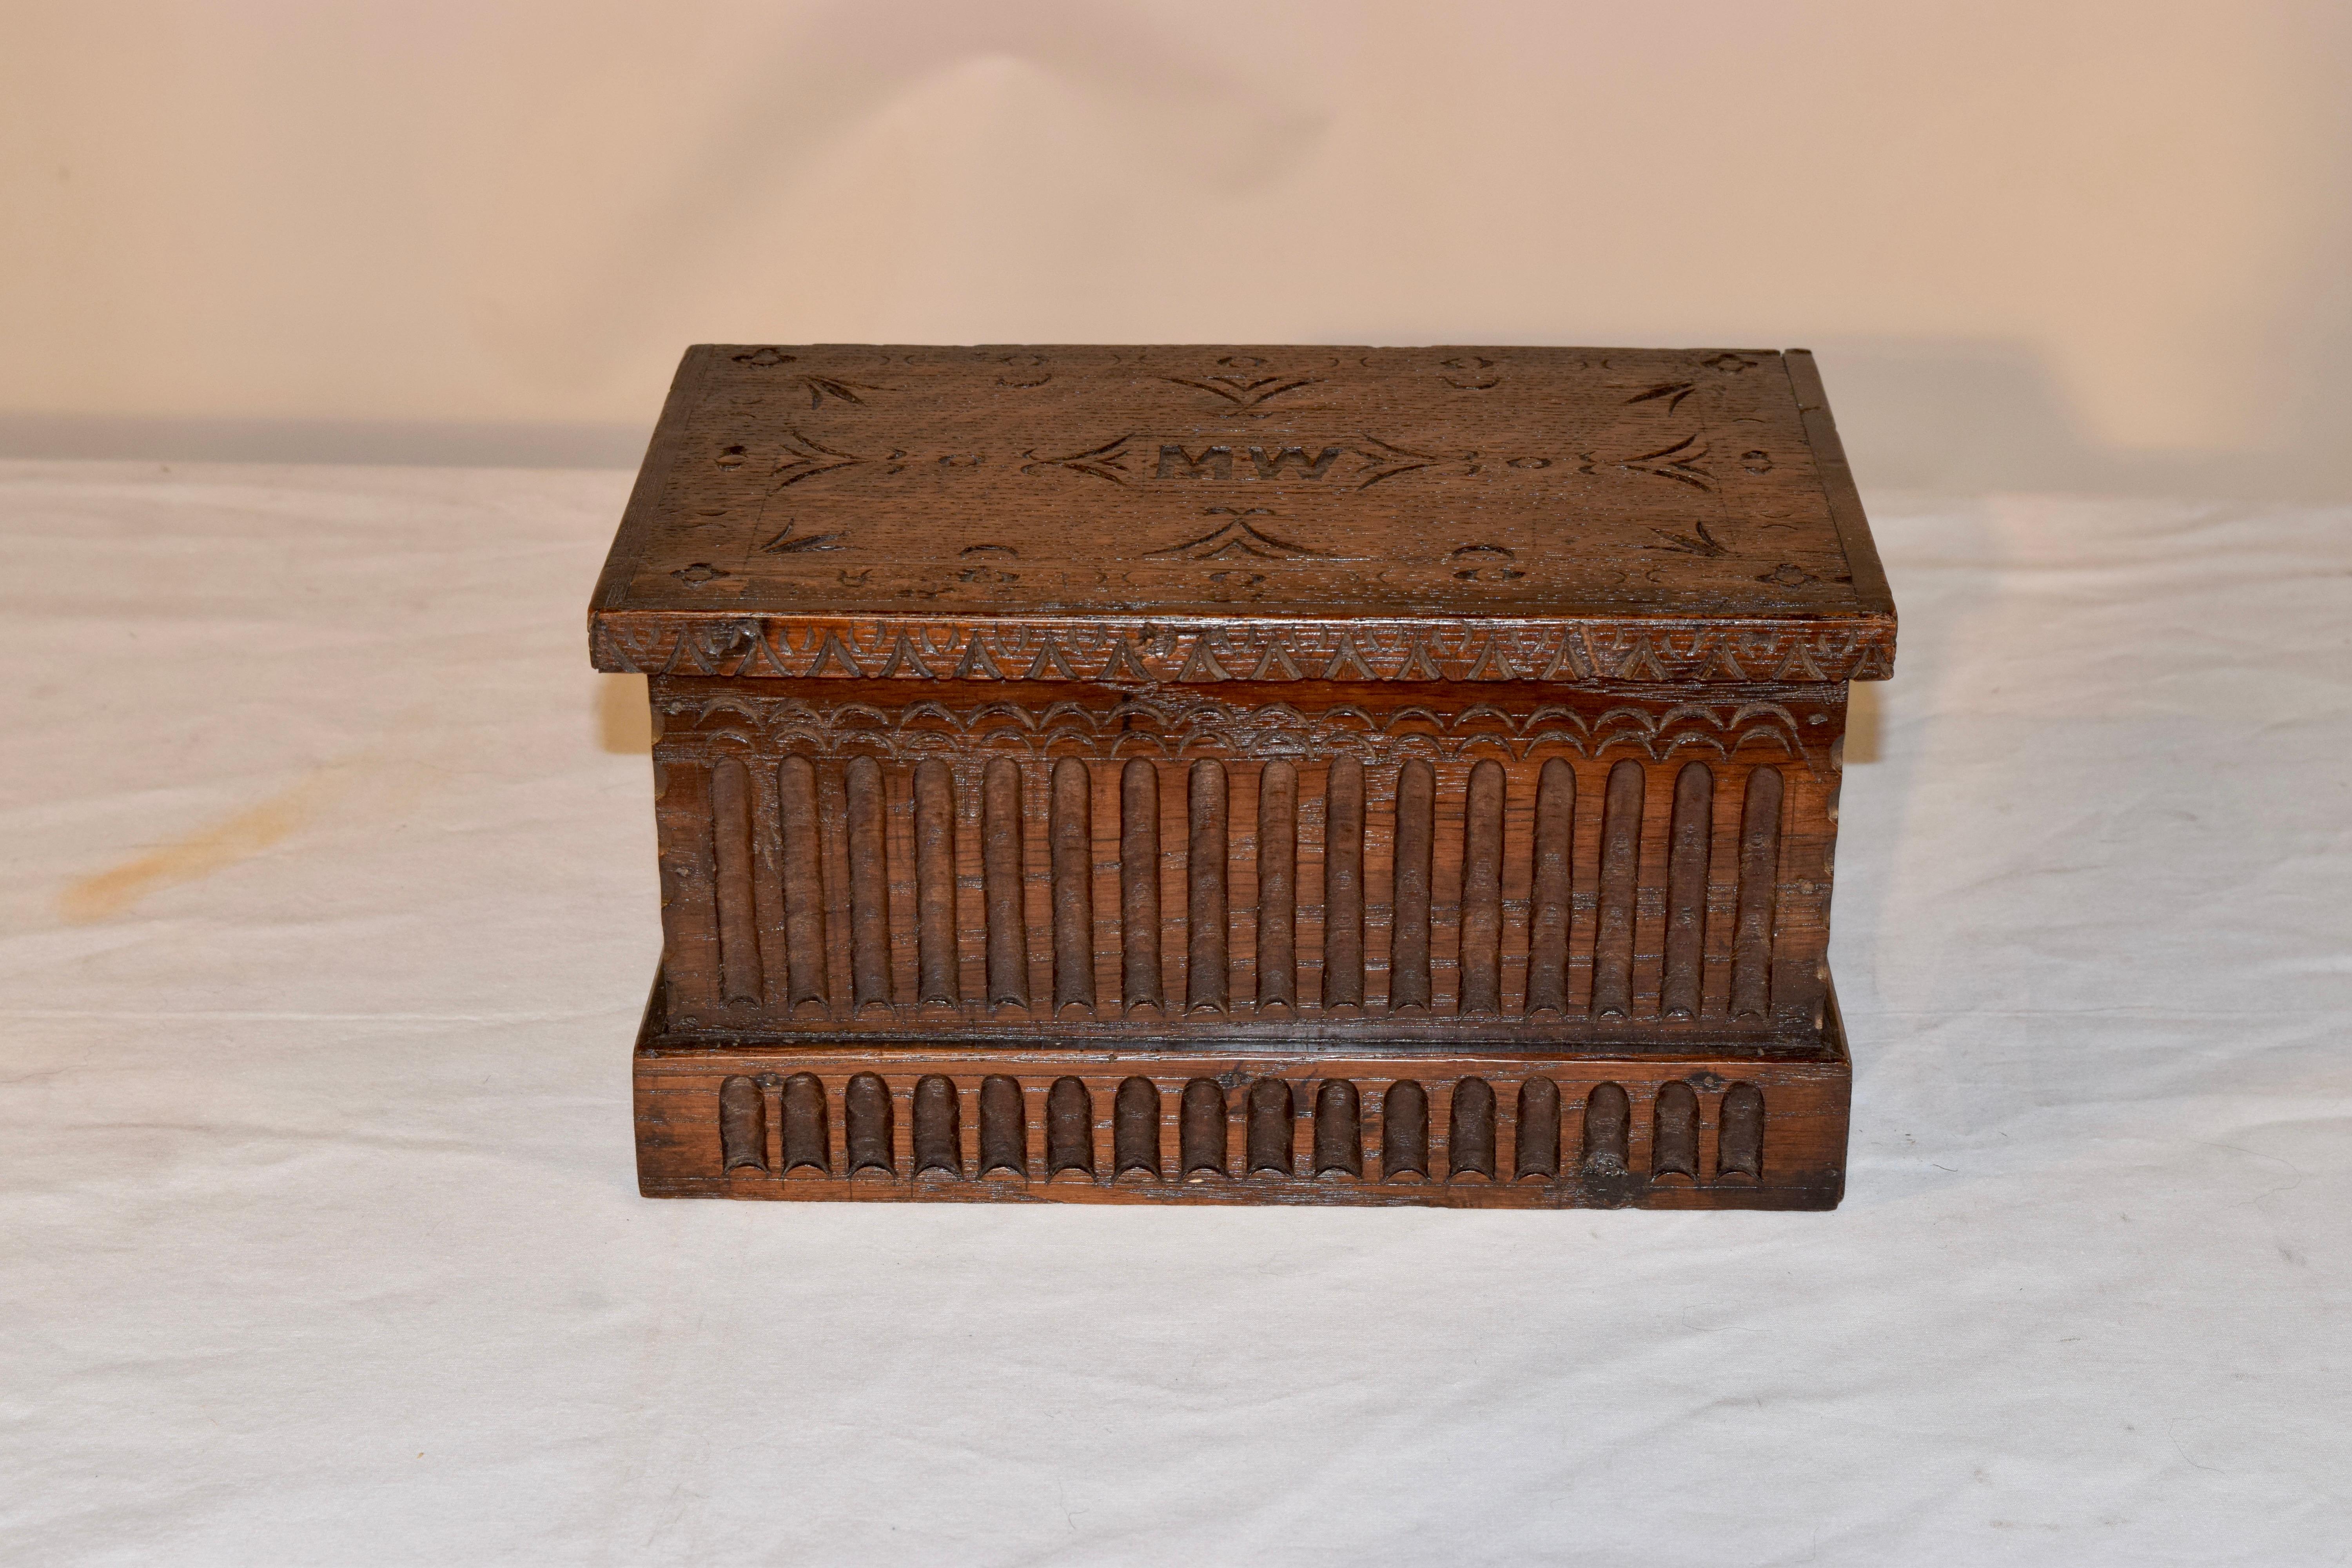 eichenholzkiste aus dem 19. Jahrhundert aus England mit schönen Schnitzereien. Das Kästchen erinnert an eine Miniatur-Deckentruhe, in deren Deckel die Initialen MW eingraviert sind. Der Deckel lässt sich öffnen und gibt den Blick frei auf